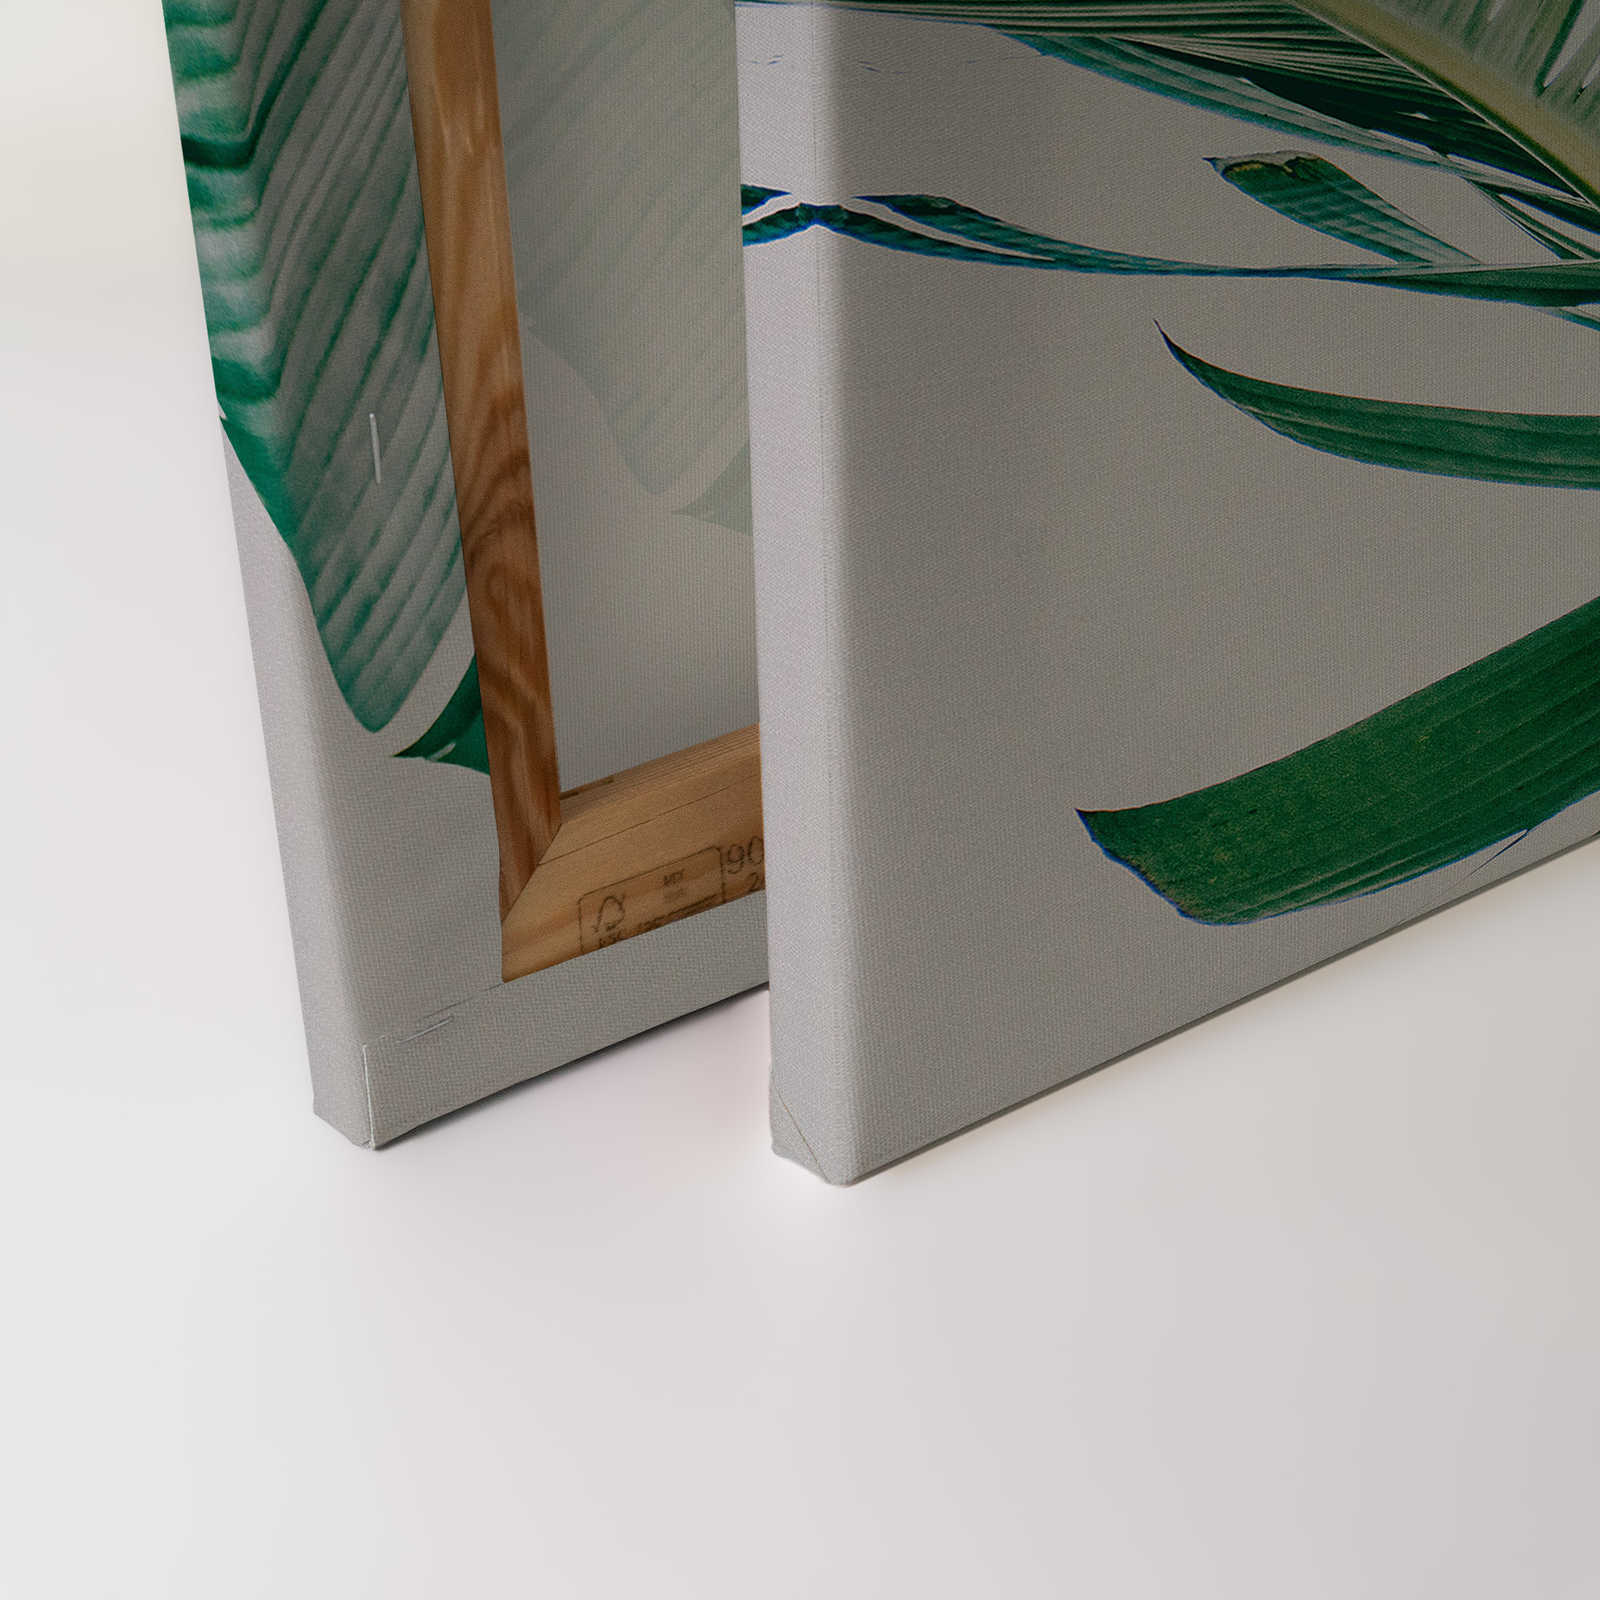             Cuadro en lienzo con motivo natural de hojas de palmera - 0,90 m x 0,60 m
        